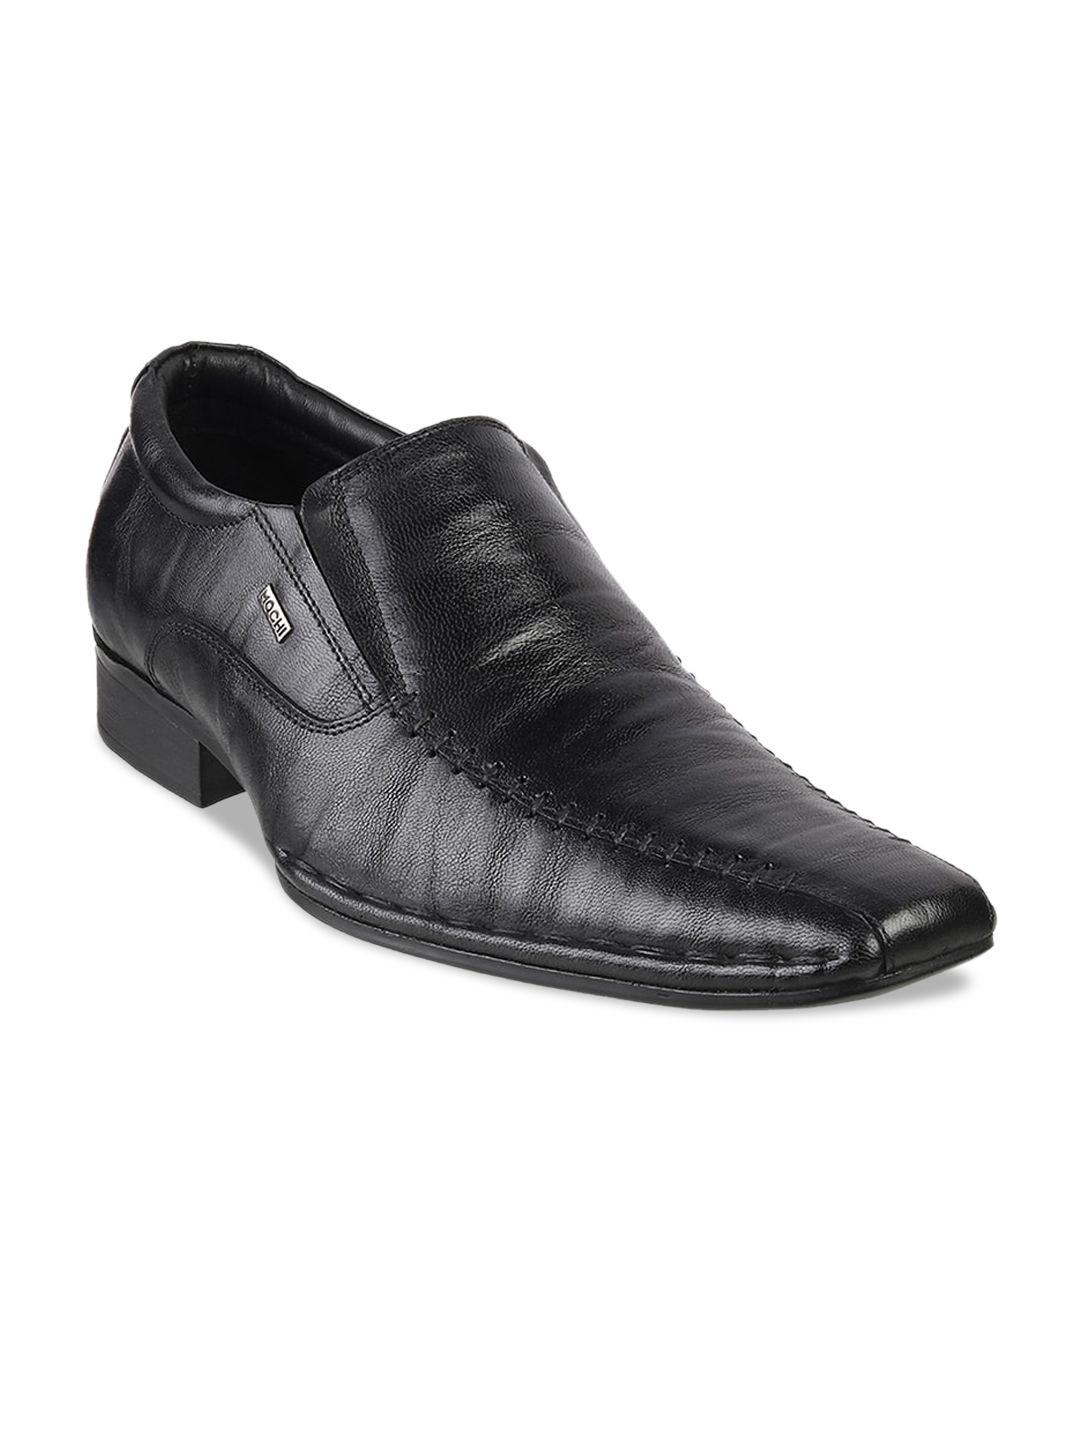 mochi men black solid leather formal slip-ons